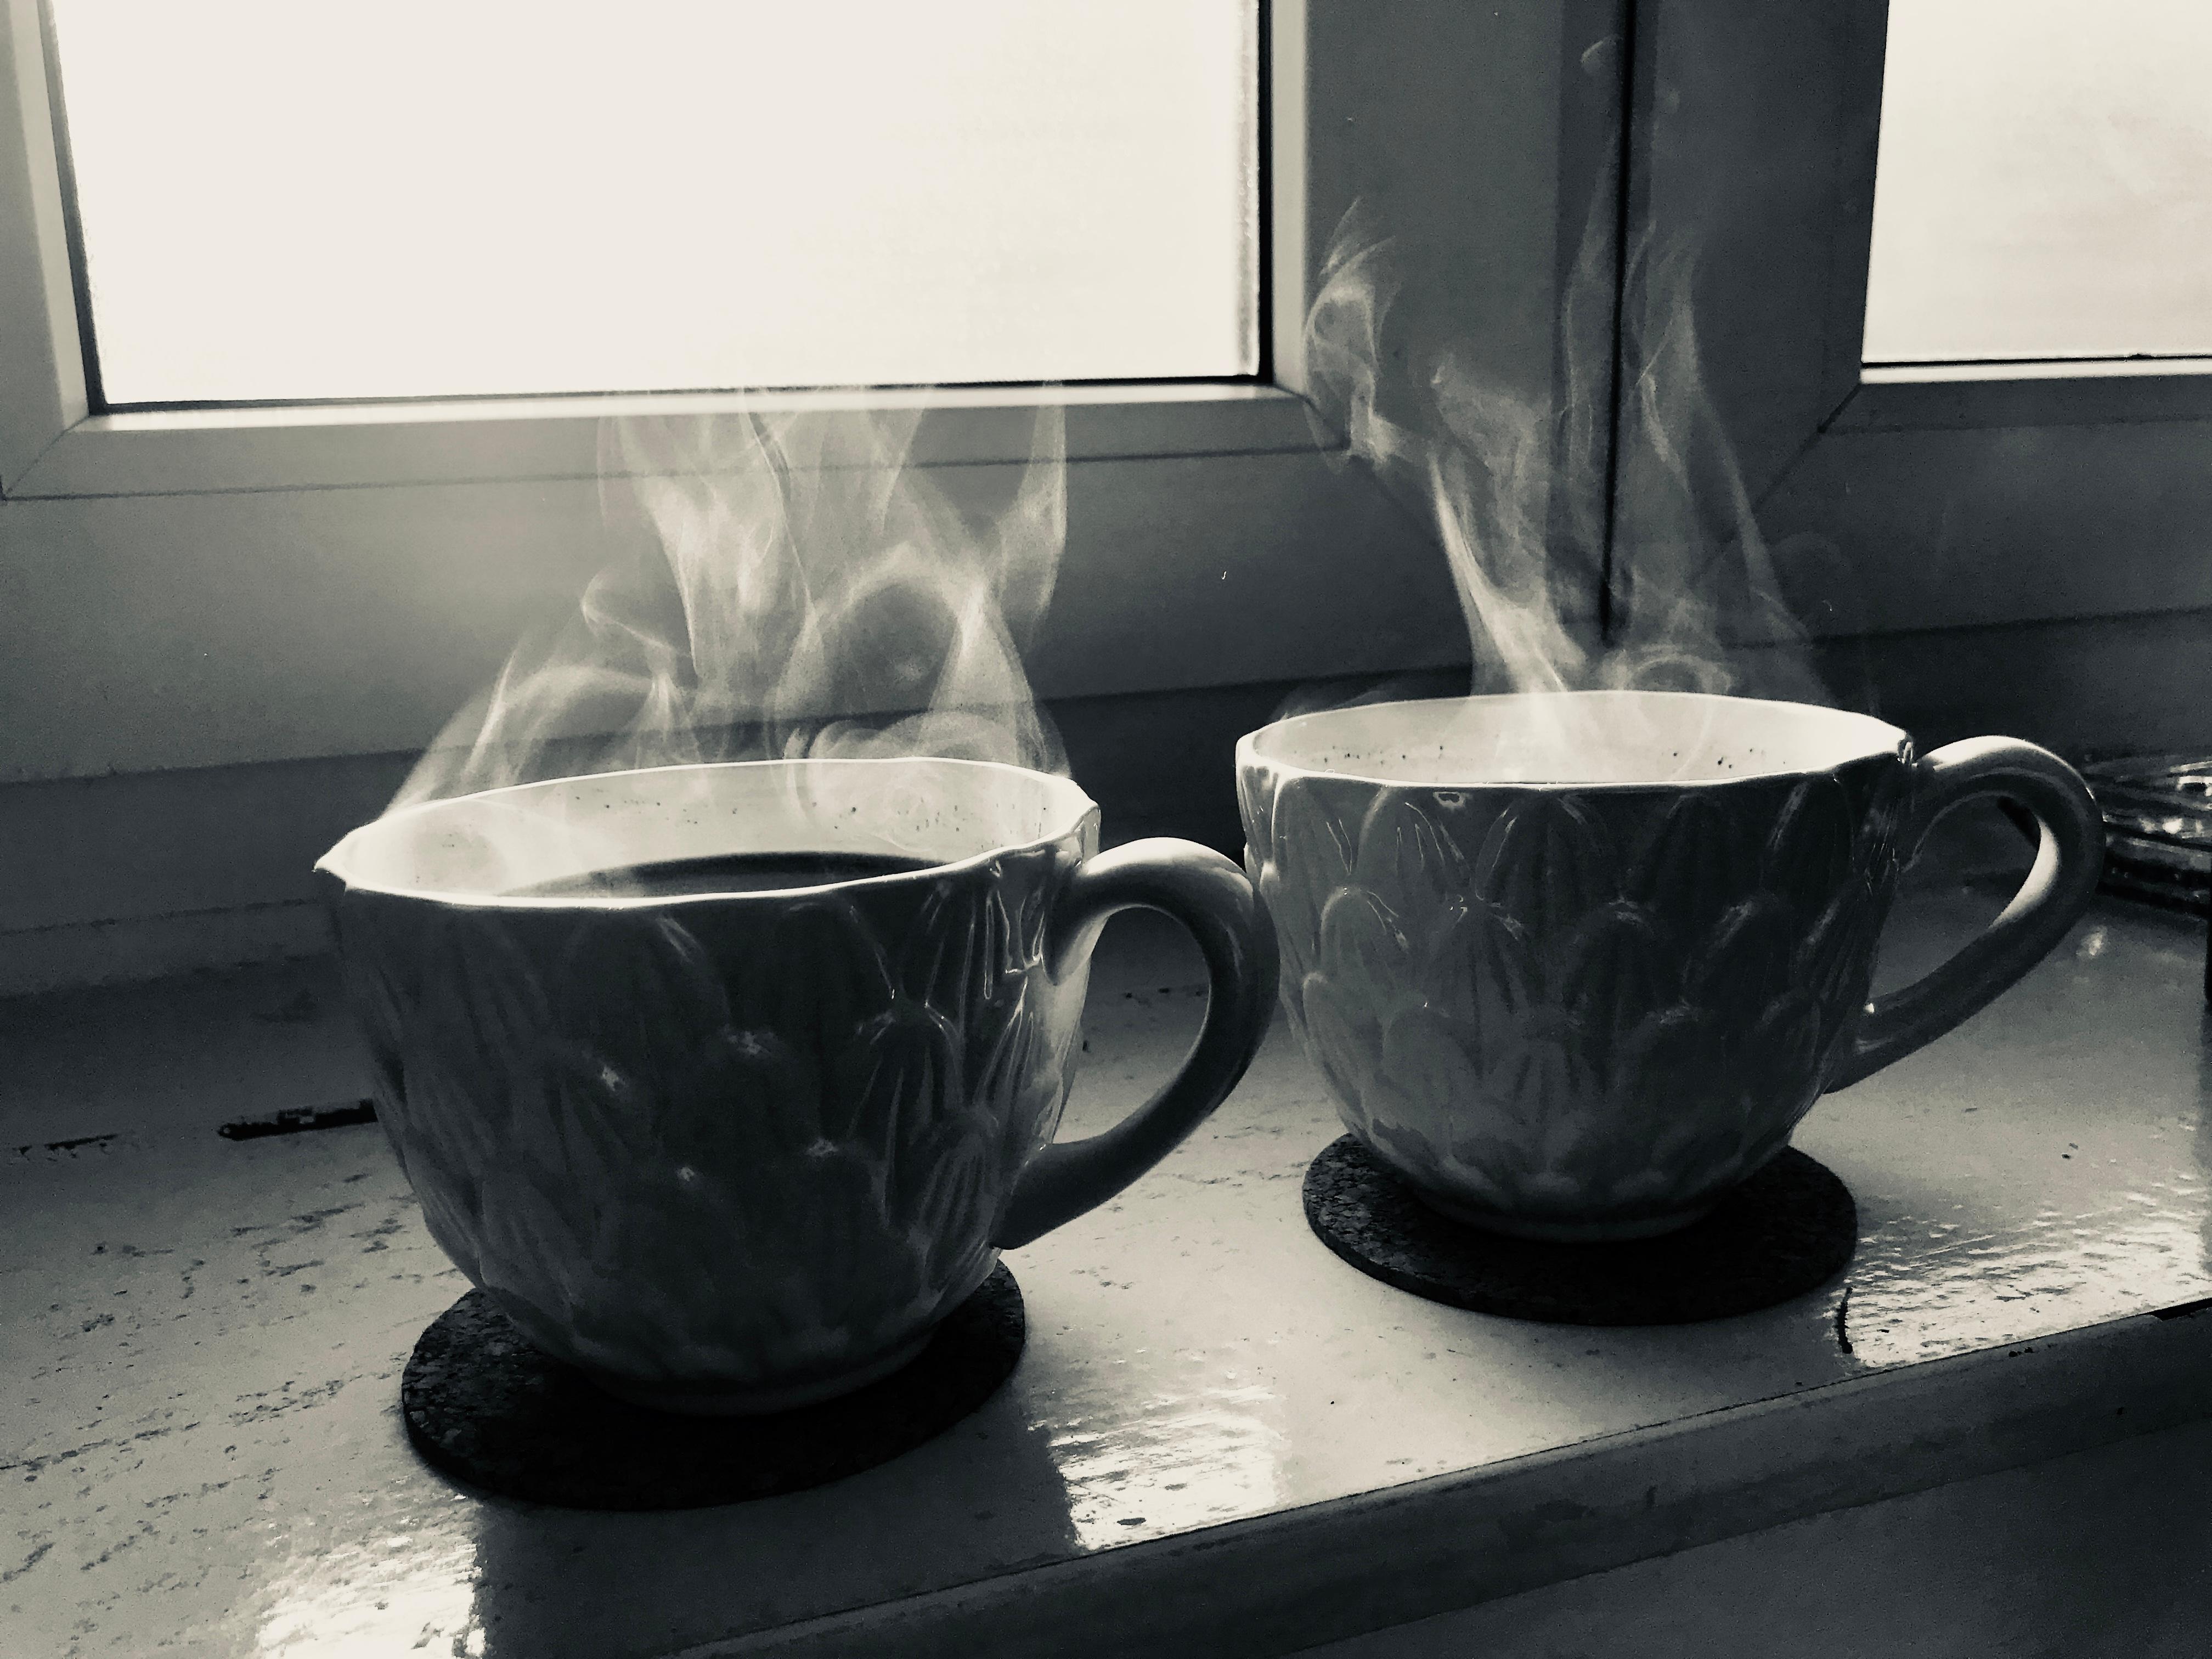 An den kleinen Sachen des Lebens sollte man sich erfreuen und das fängt schon bei einer Tasse Kaffee an. #coffeelove